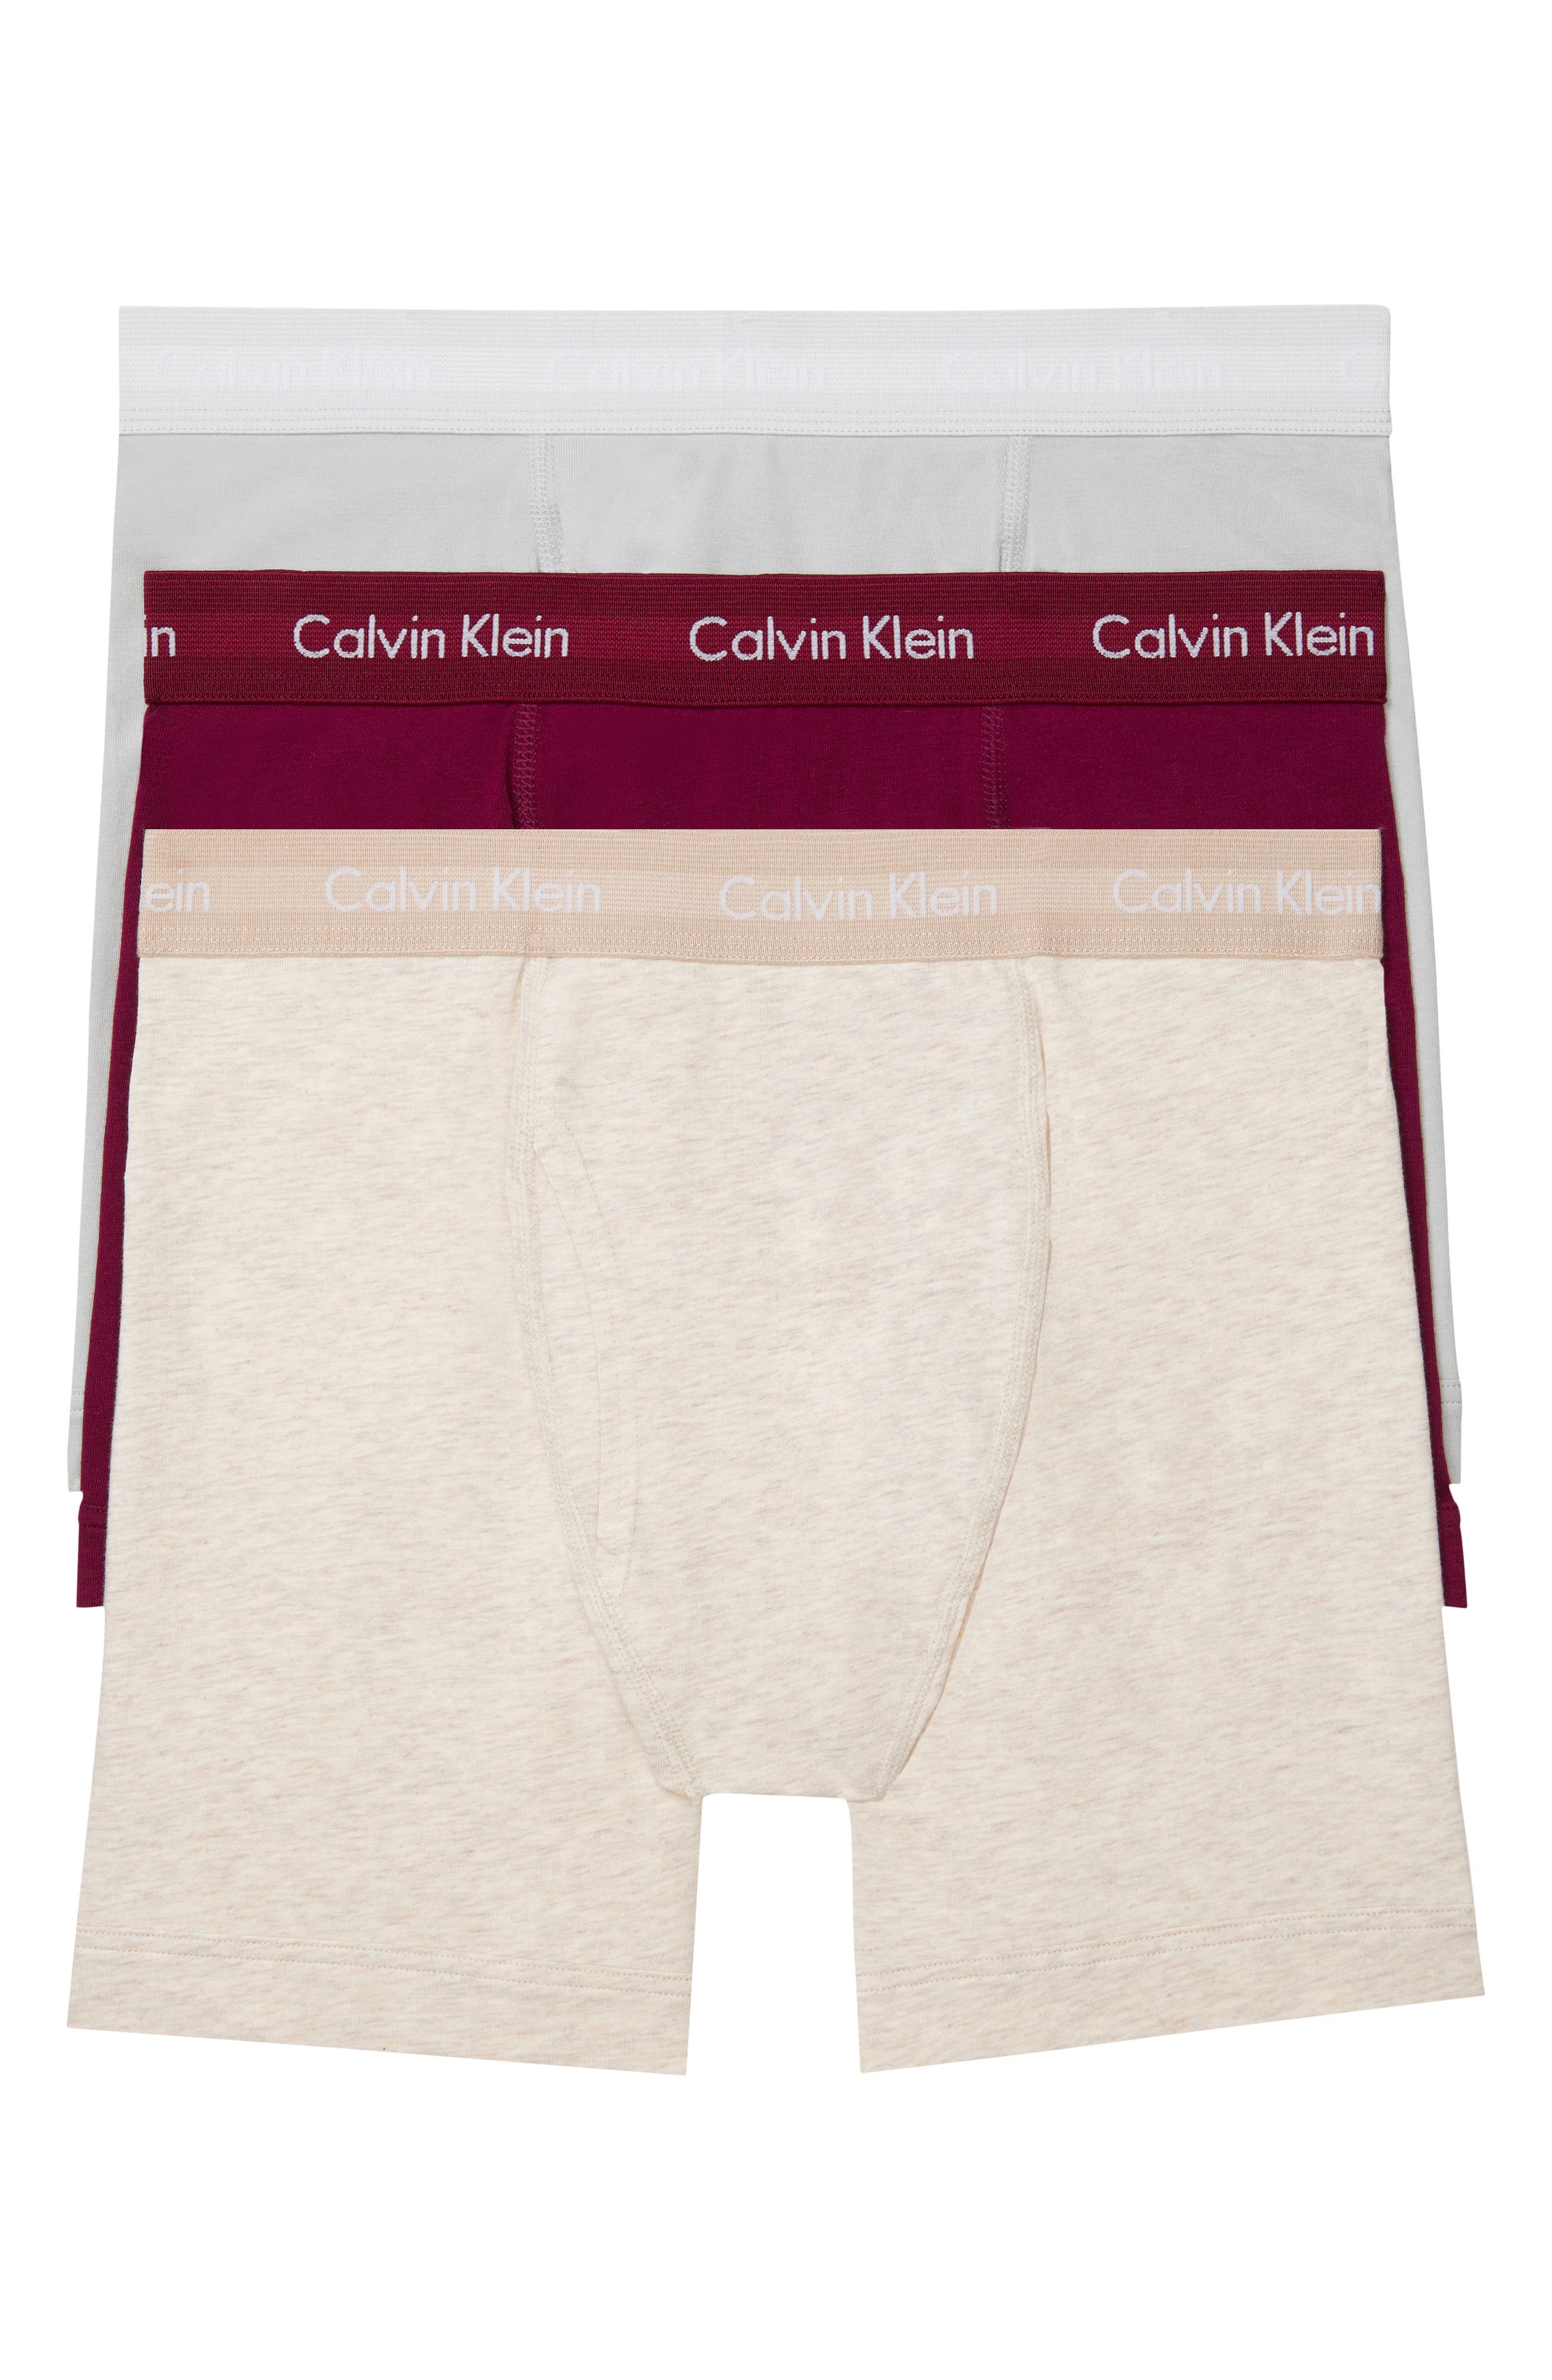 calvin klein underwear fit guide